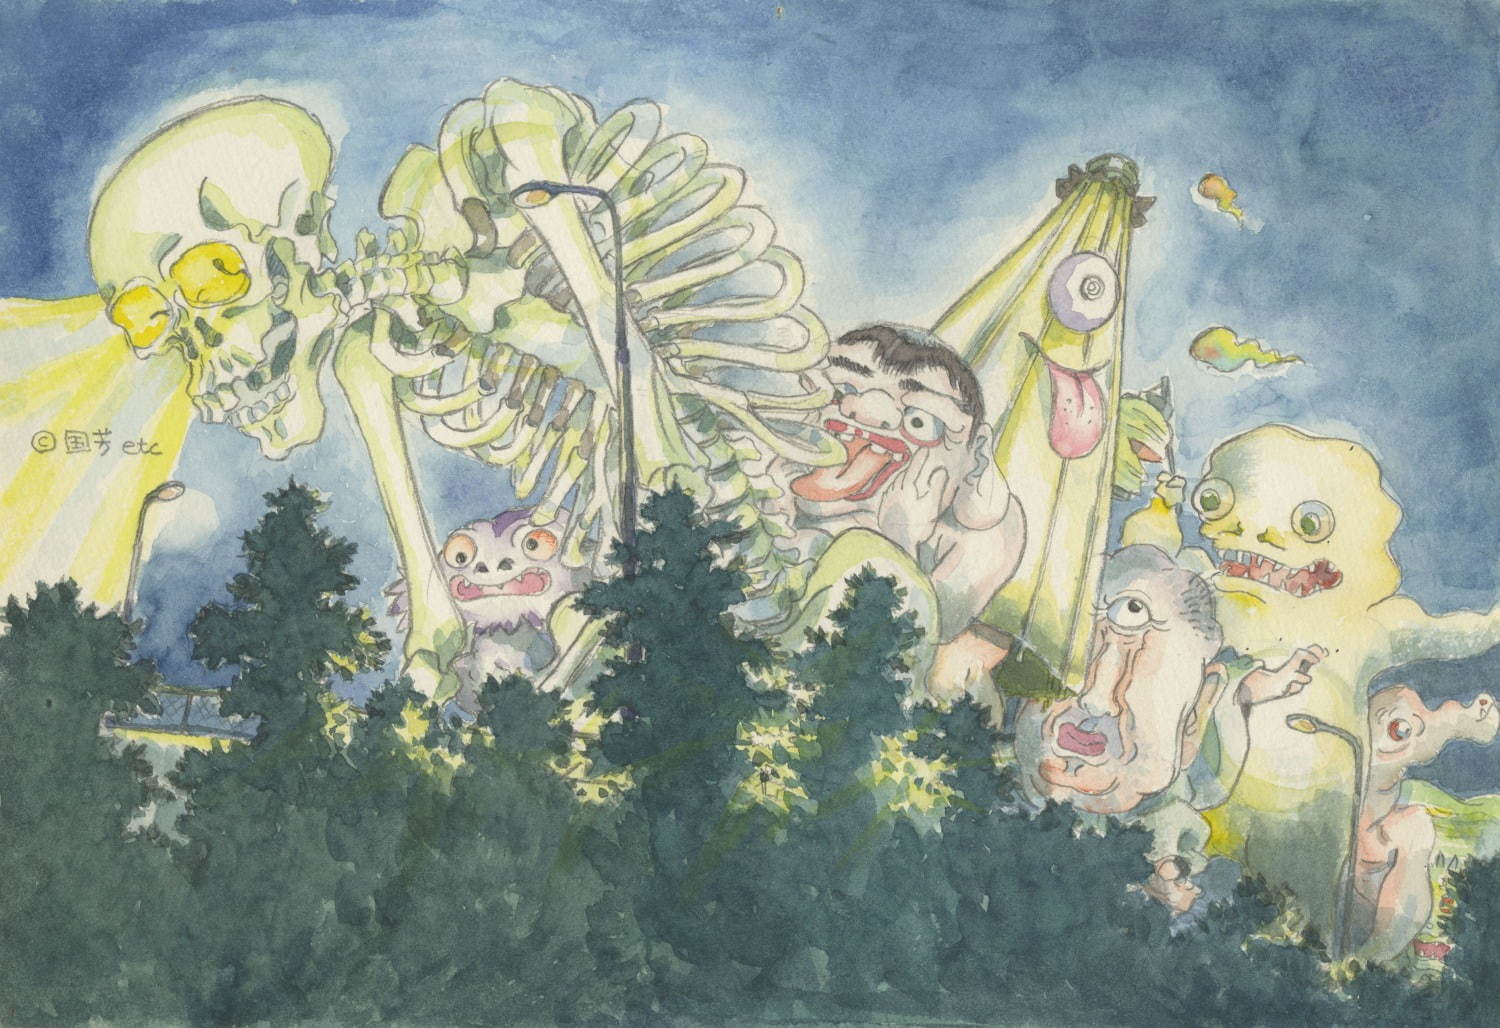 「平成狸合戦ぽんぽこ」イメージボード
© 1994 畑事務所・Studio Ghibli・NH